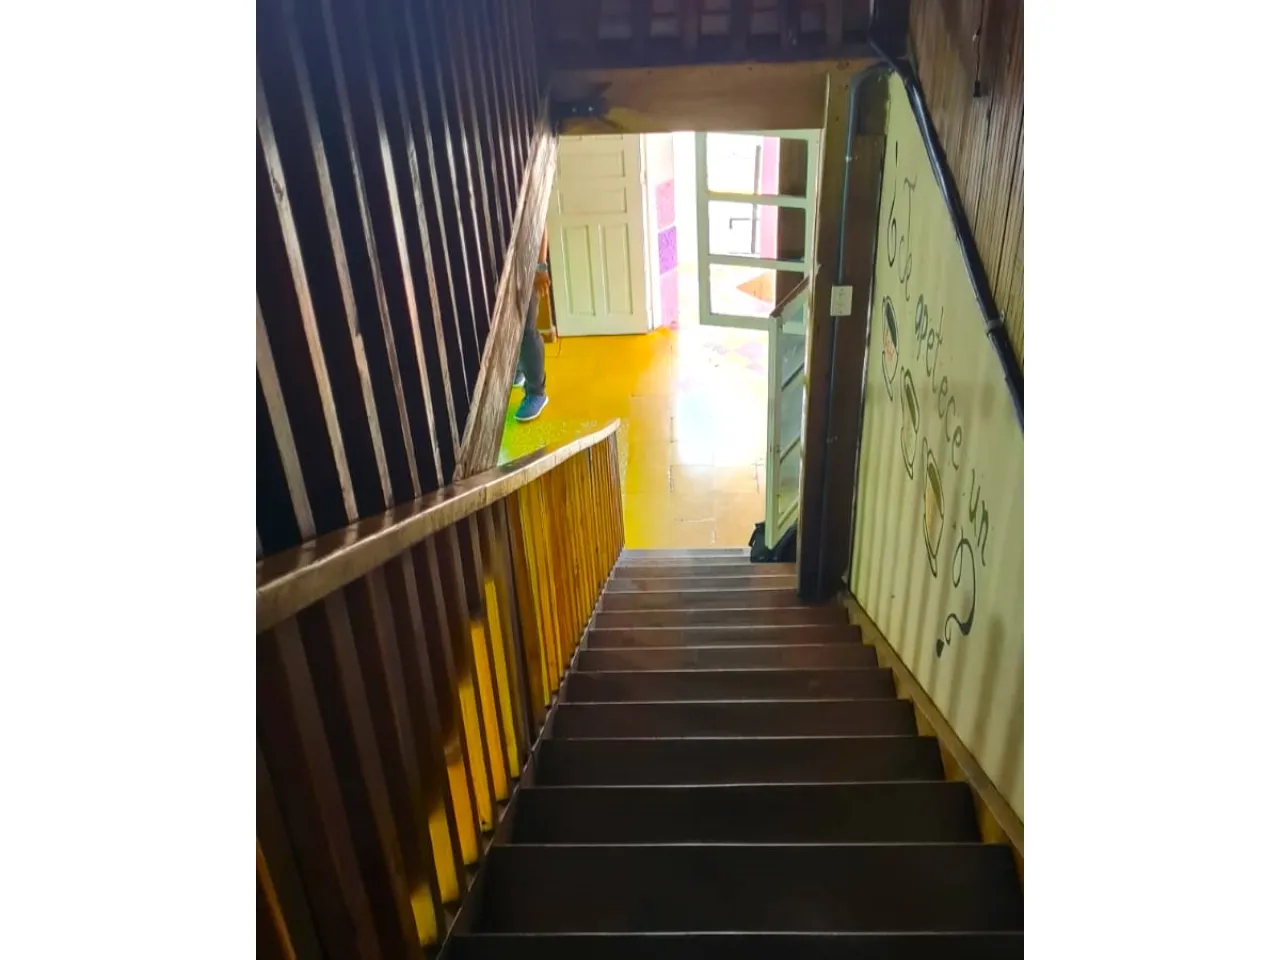 Escaleras de madera que brindan acceso al segundo nivel de la propiedad.